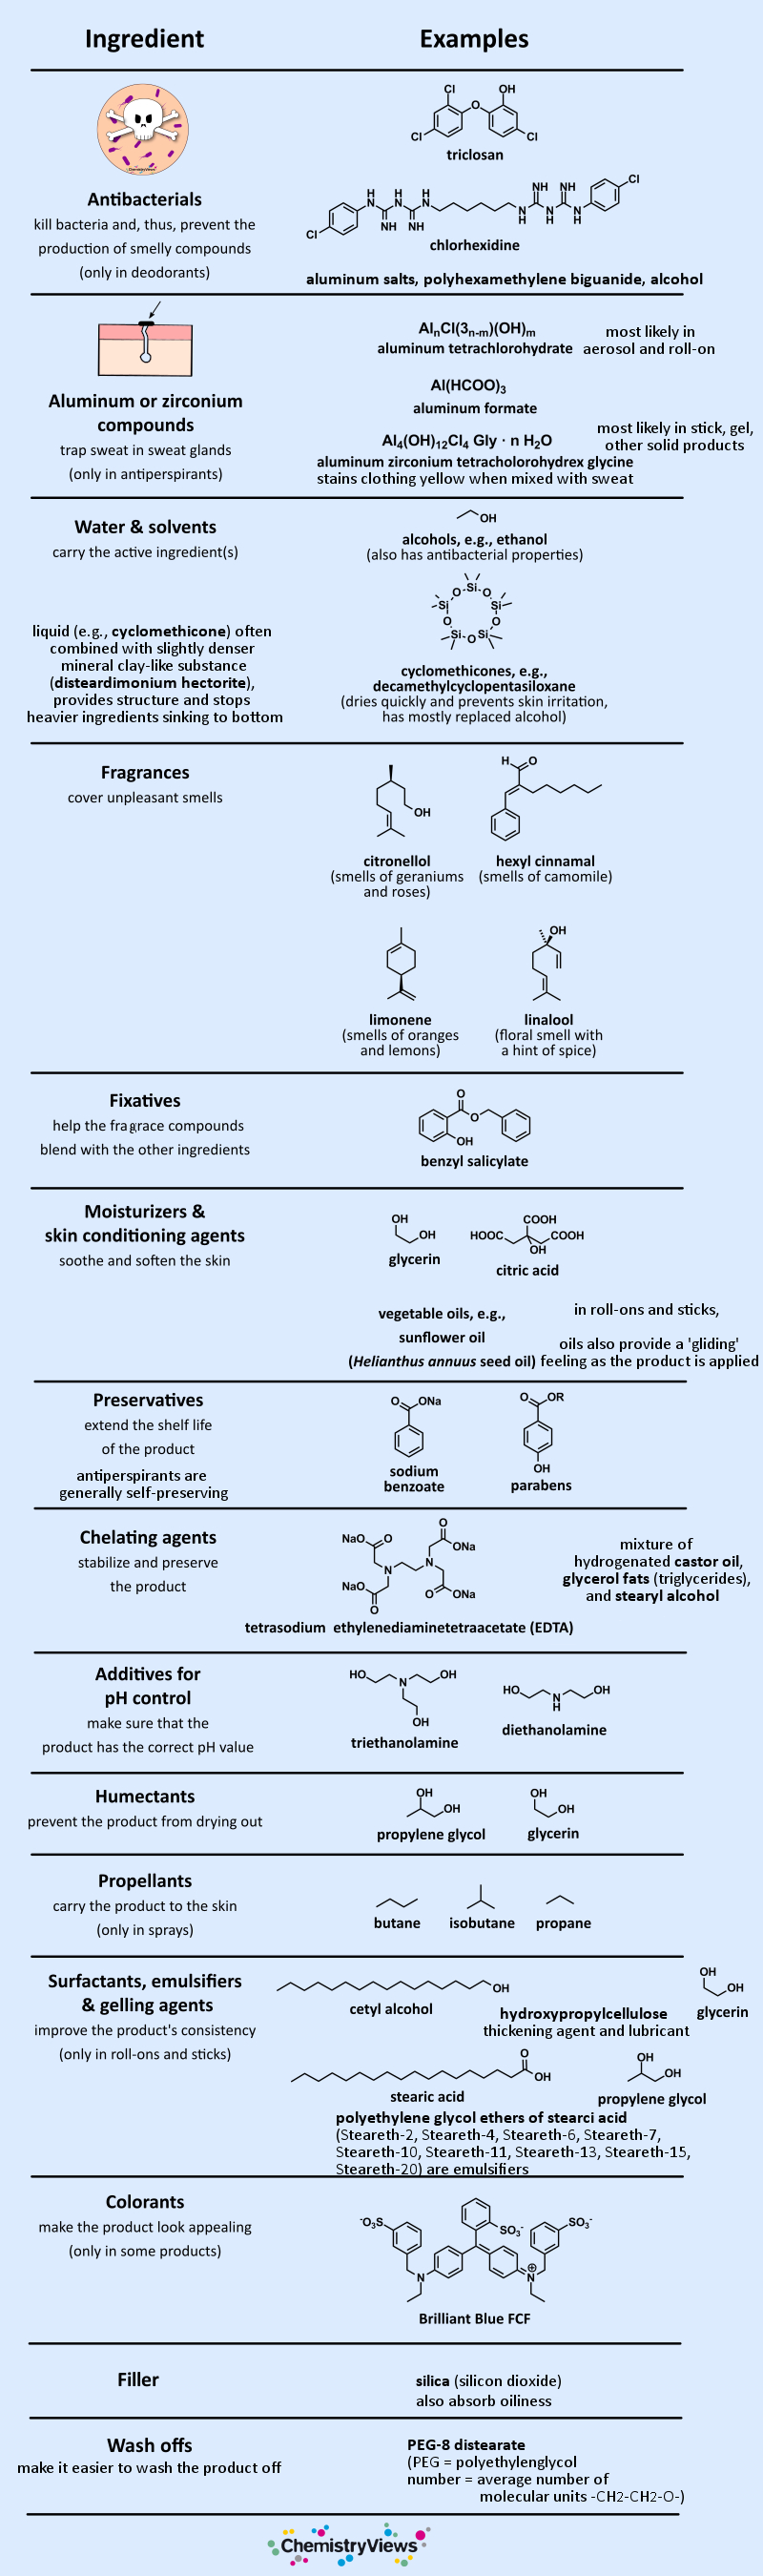 Chemistry of Deodorants Ingredients